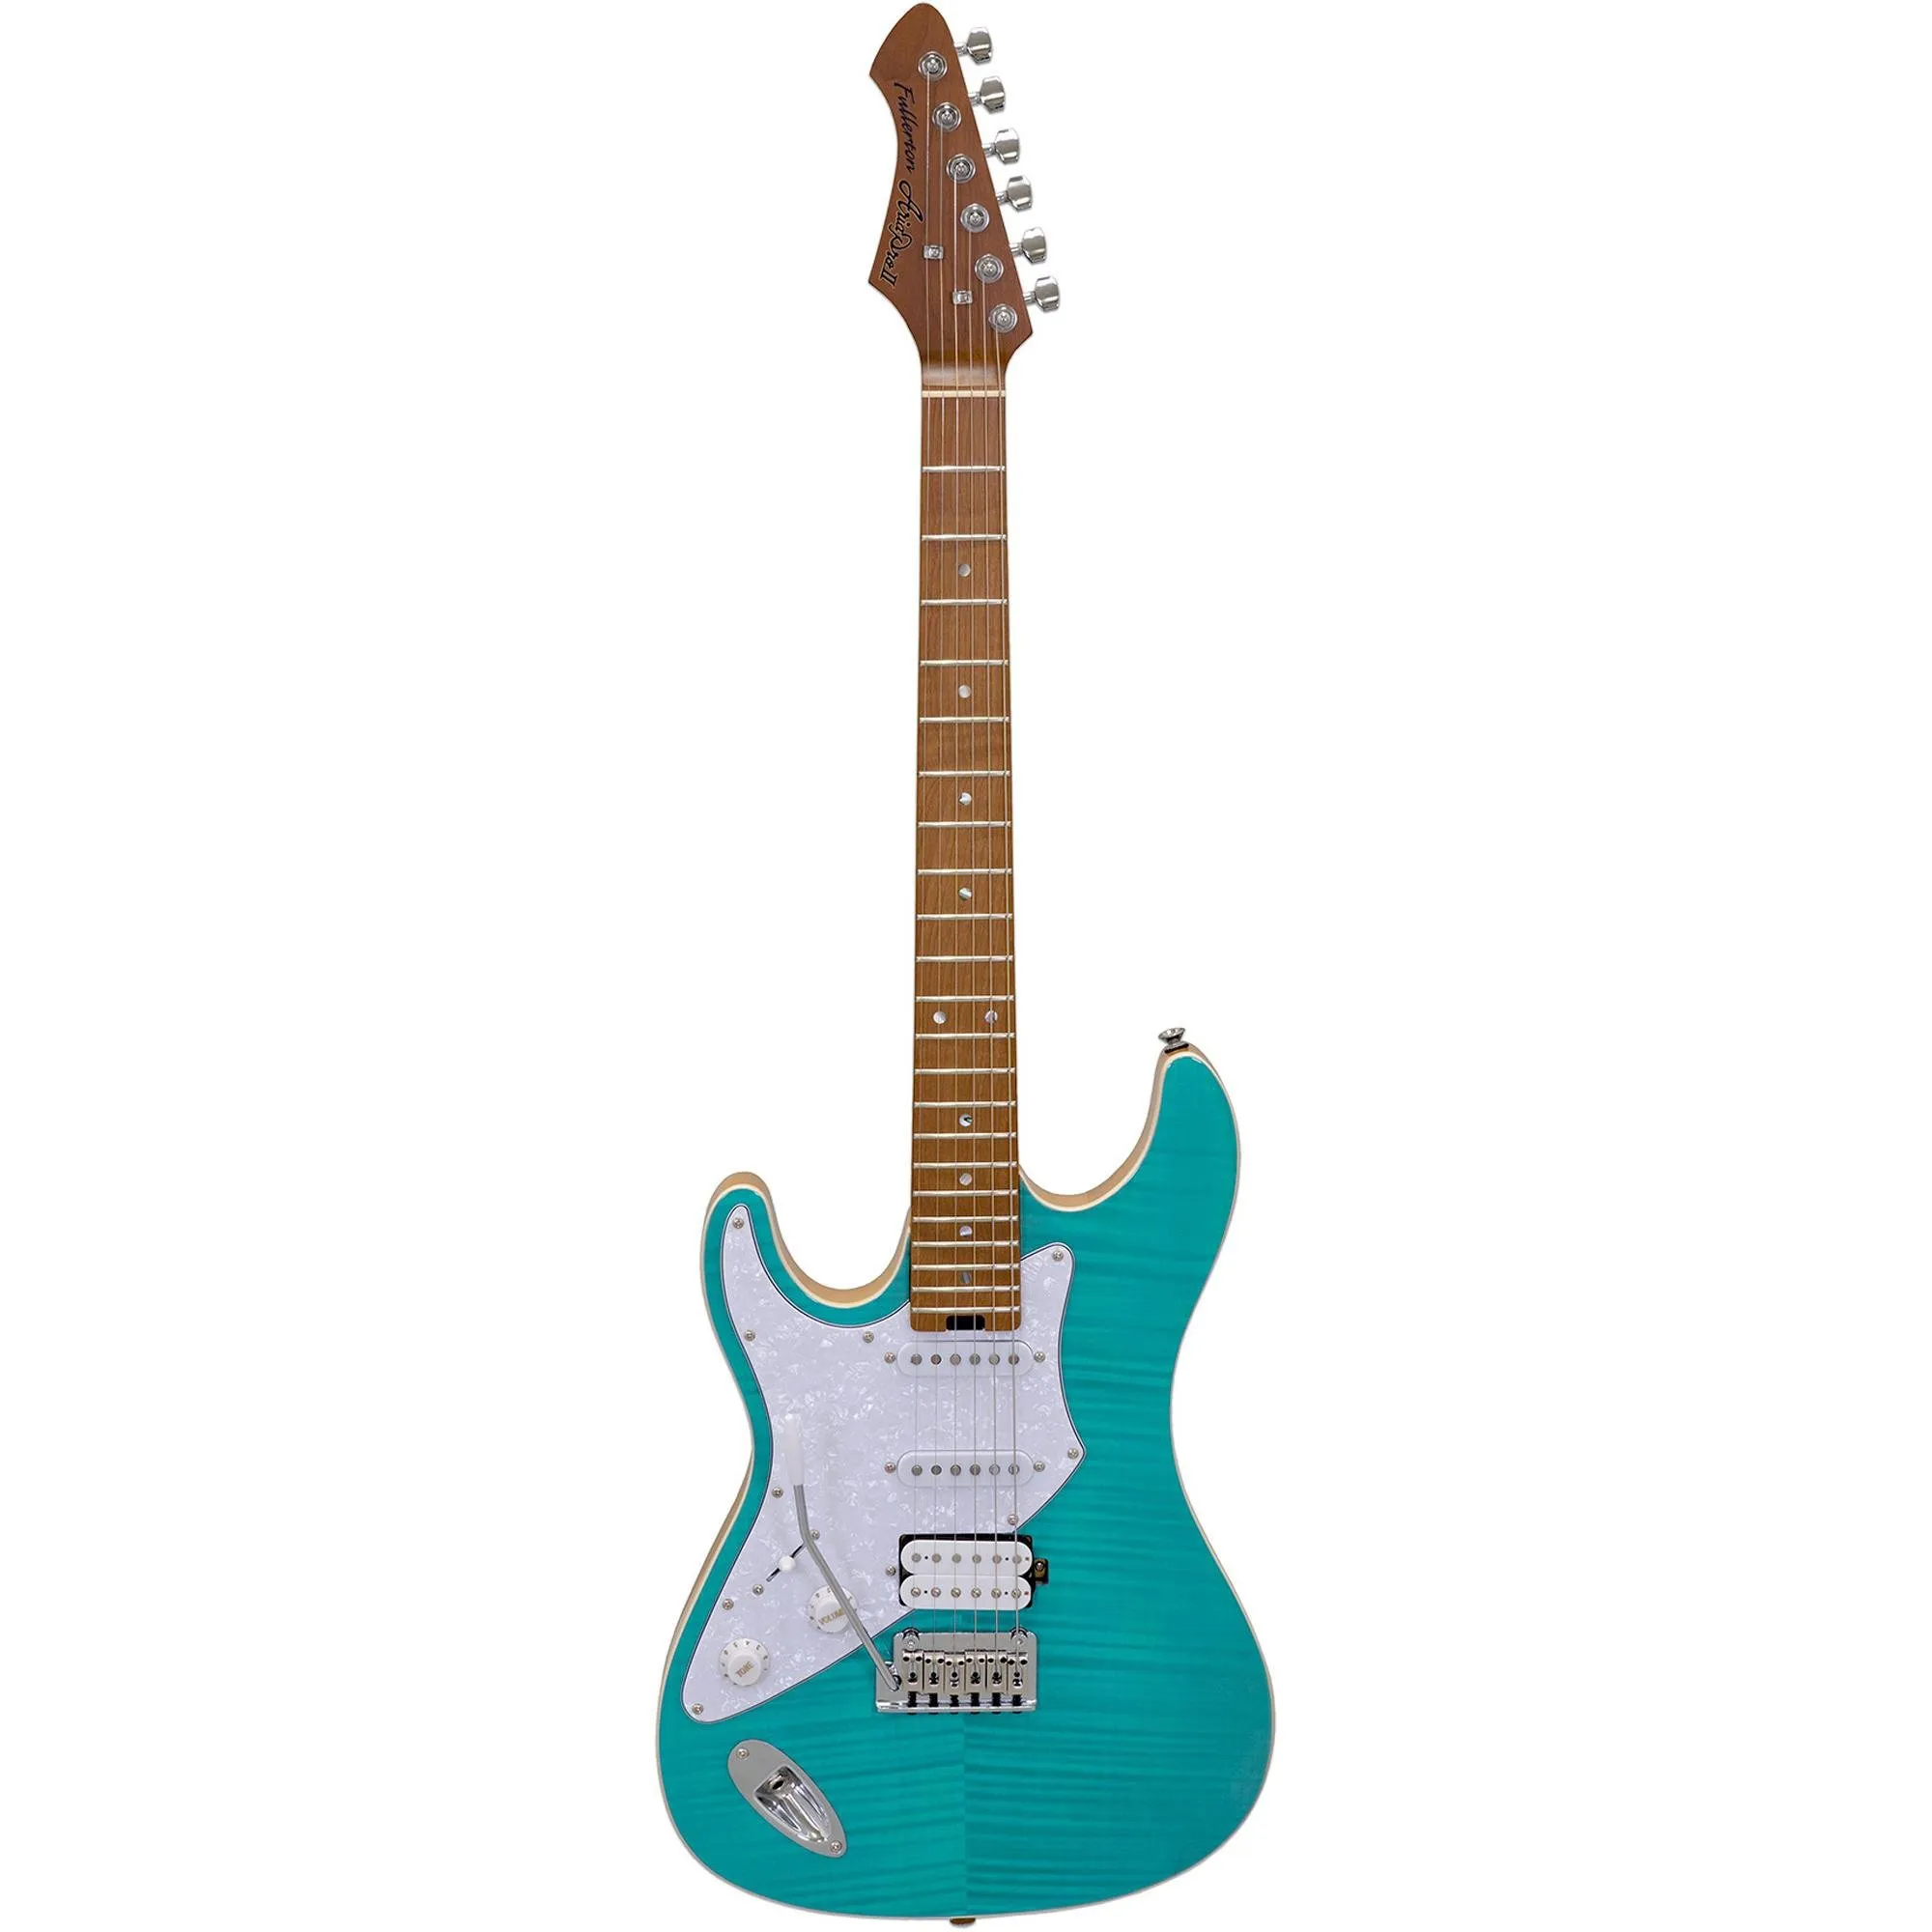 Guitarra Aria Pro II 714-MK2 LH Turqoise Blue (canhoto) por 0,00 à vista no boleto/pix ou parcele em até 1x sem juros. Compre na loja Mundomax!